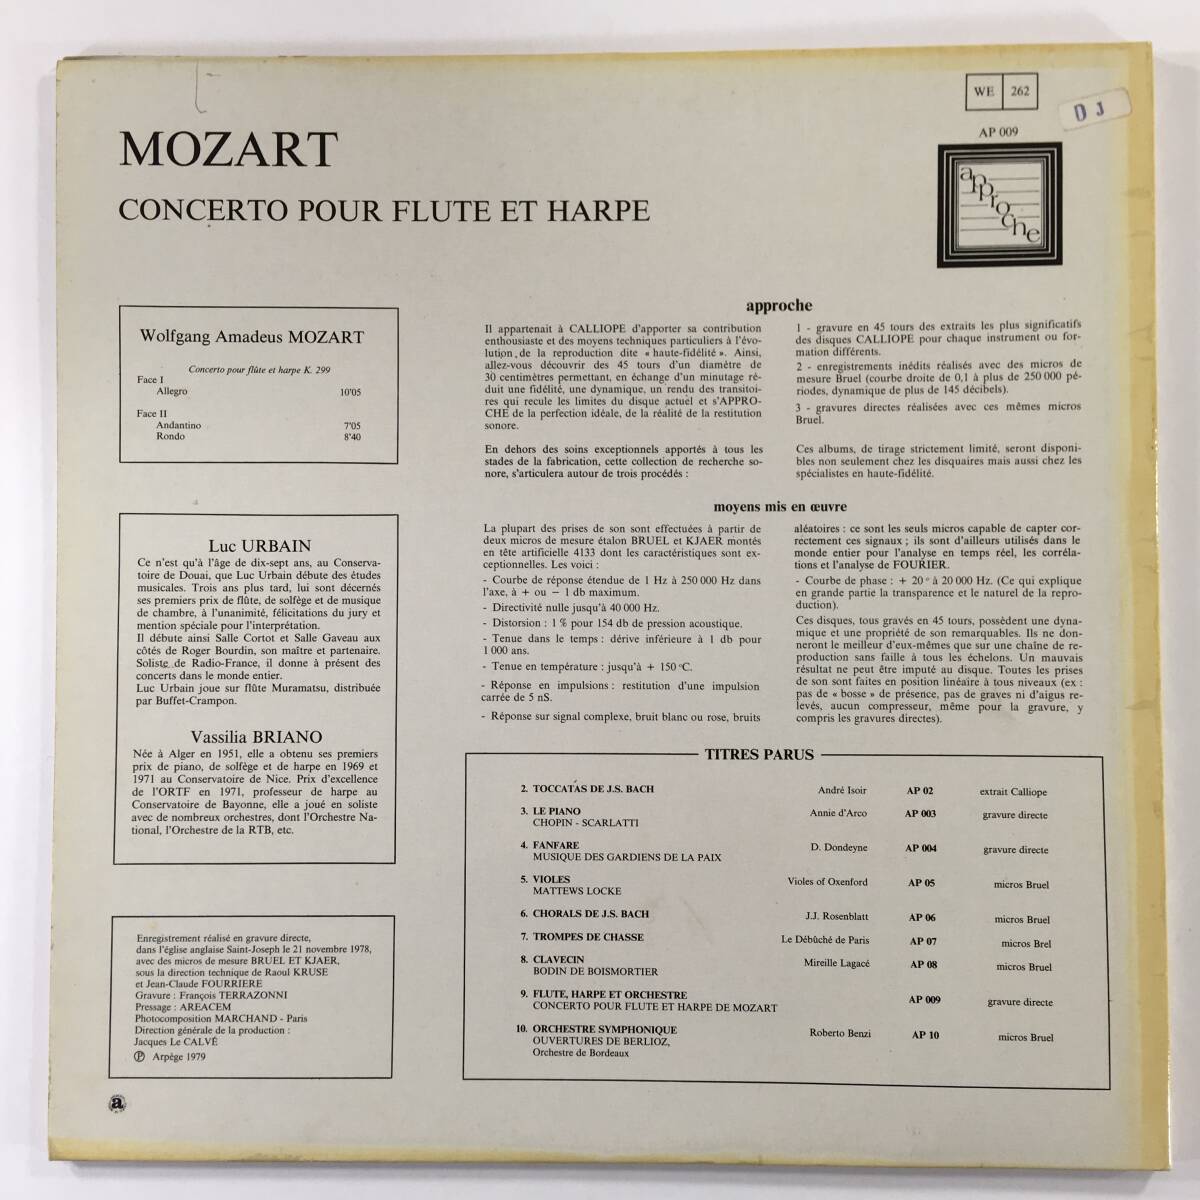 長岡鉄男 外盤A級セレクション NO.32 モーツァルト フルートとハープのための協奏曲『音場全体不思議な明るさと軽さのあるモーツァルトの画像2